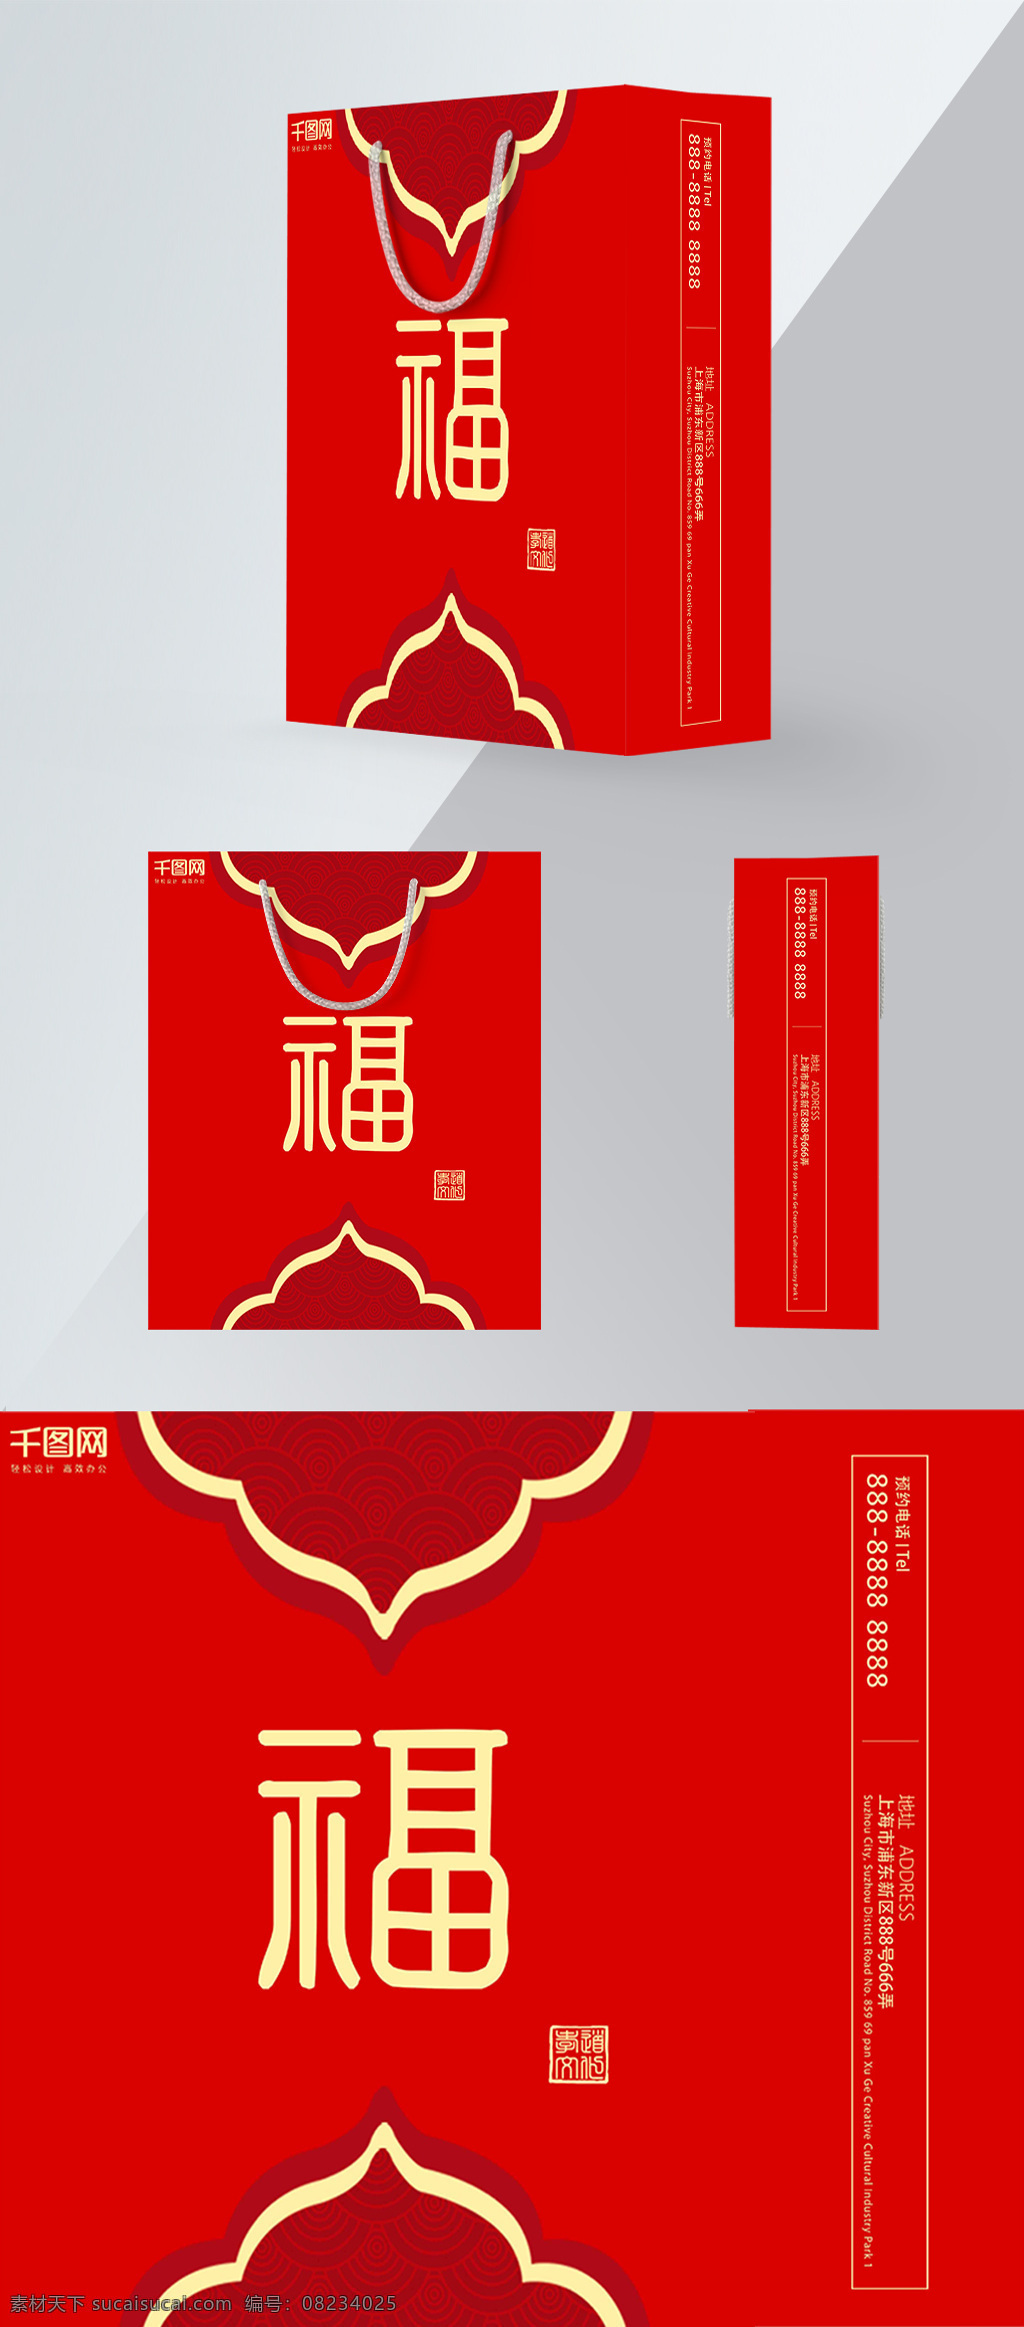 精品 手提袋 红色 简约 新年 礼品 包装设计 餐厅 促销 礼物 商场 中国风